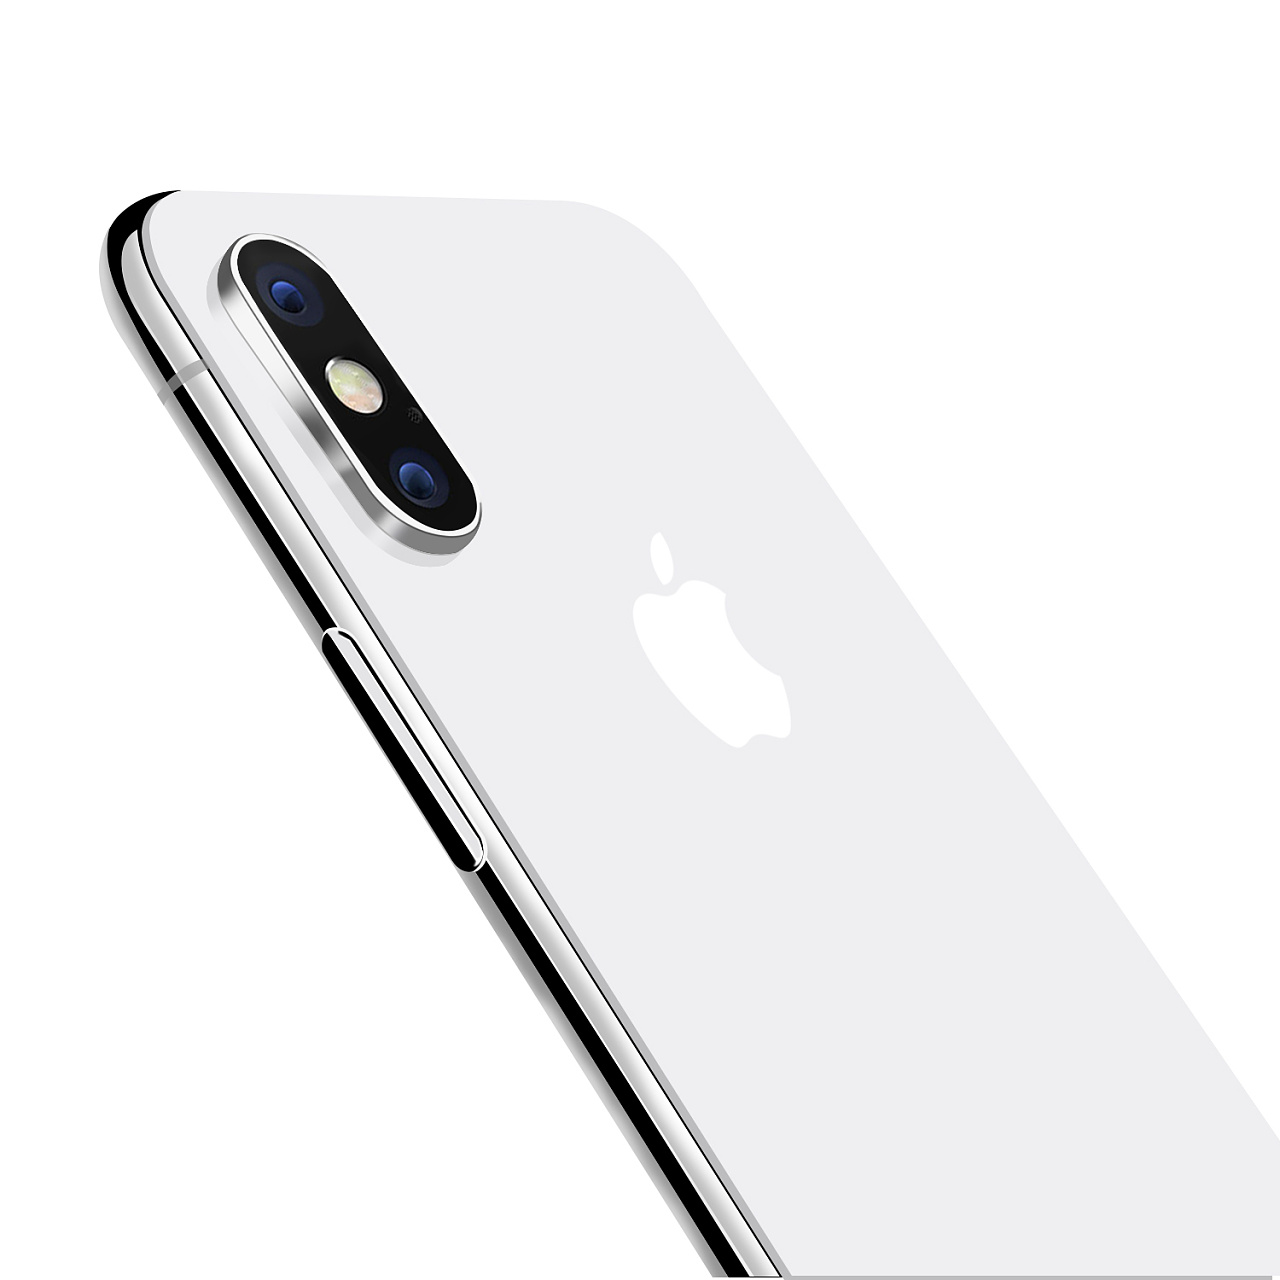 iPhoneX苹果手机产品精修修图水凝膜钢化膜背